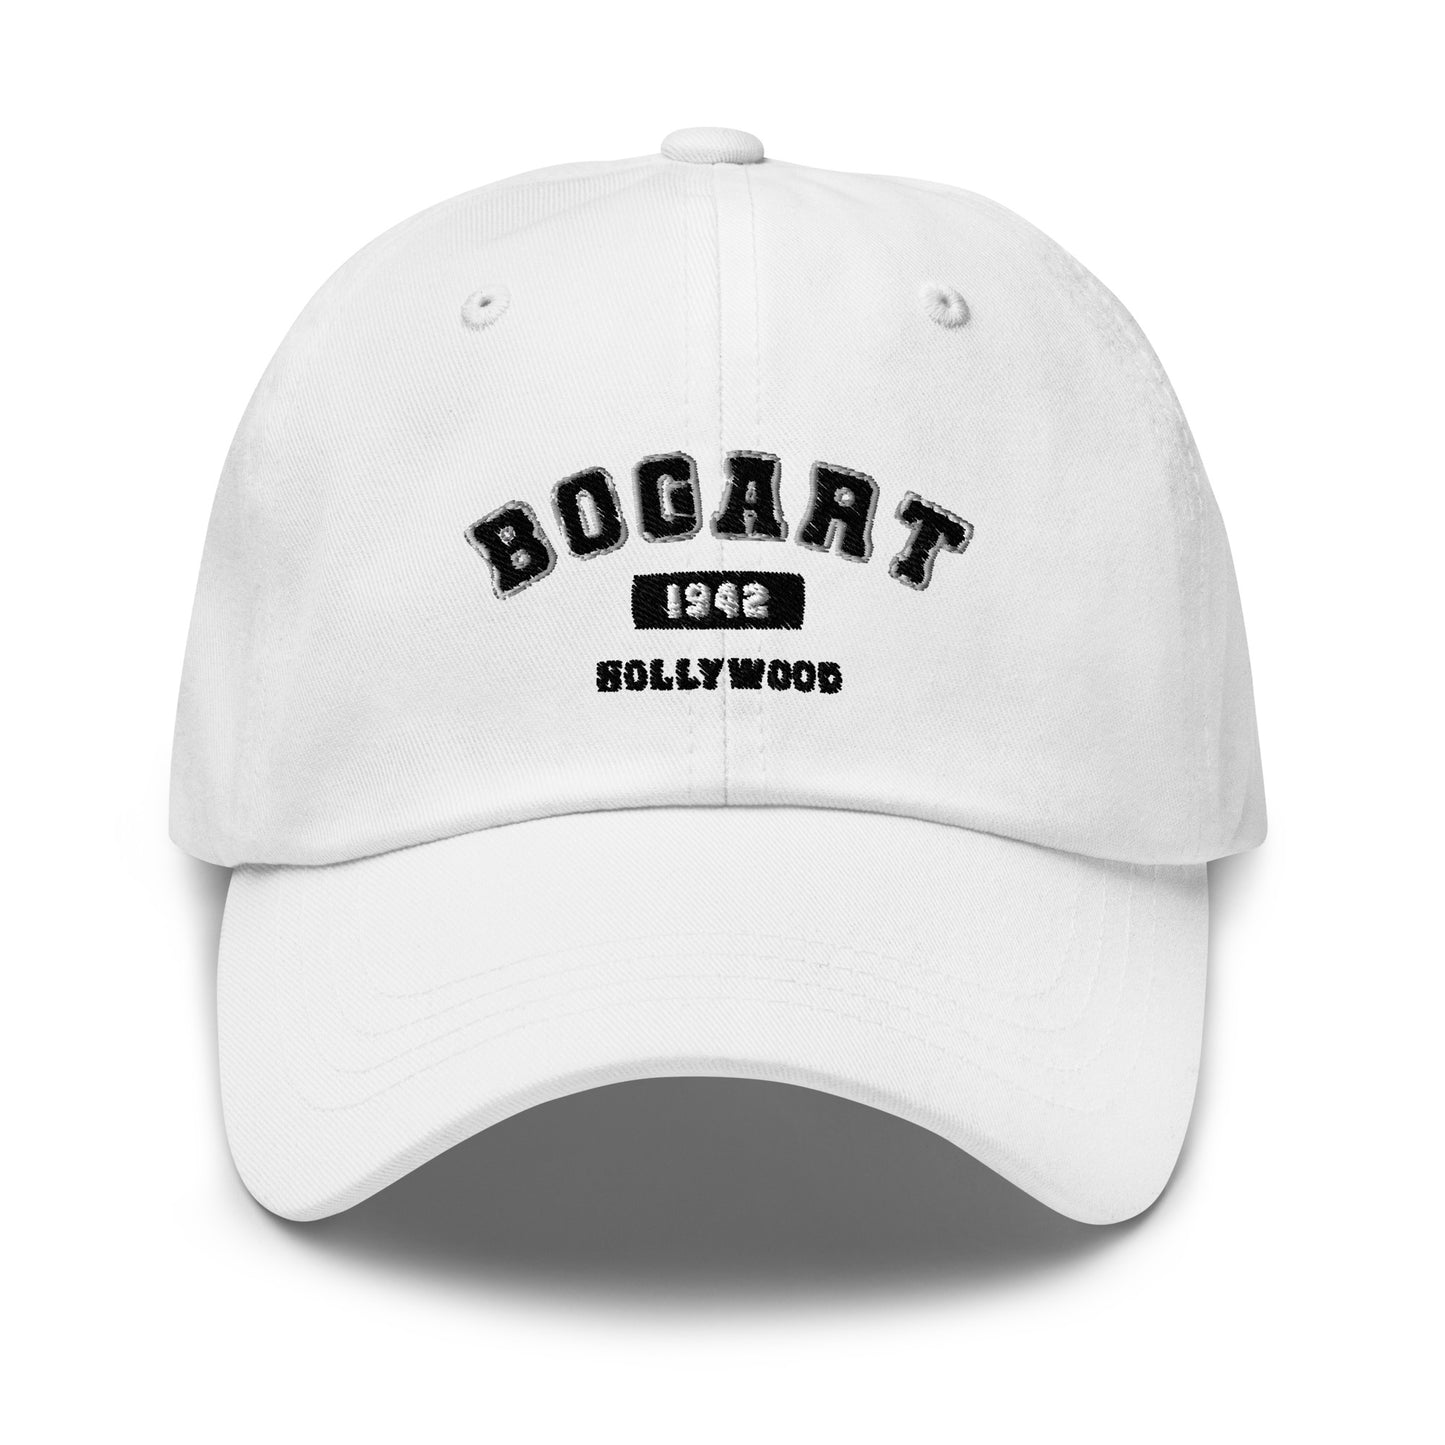 Bogart 1942 Hat (White)